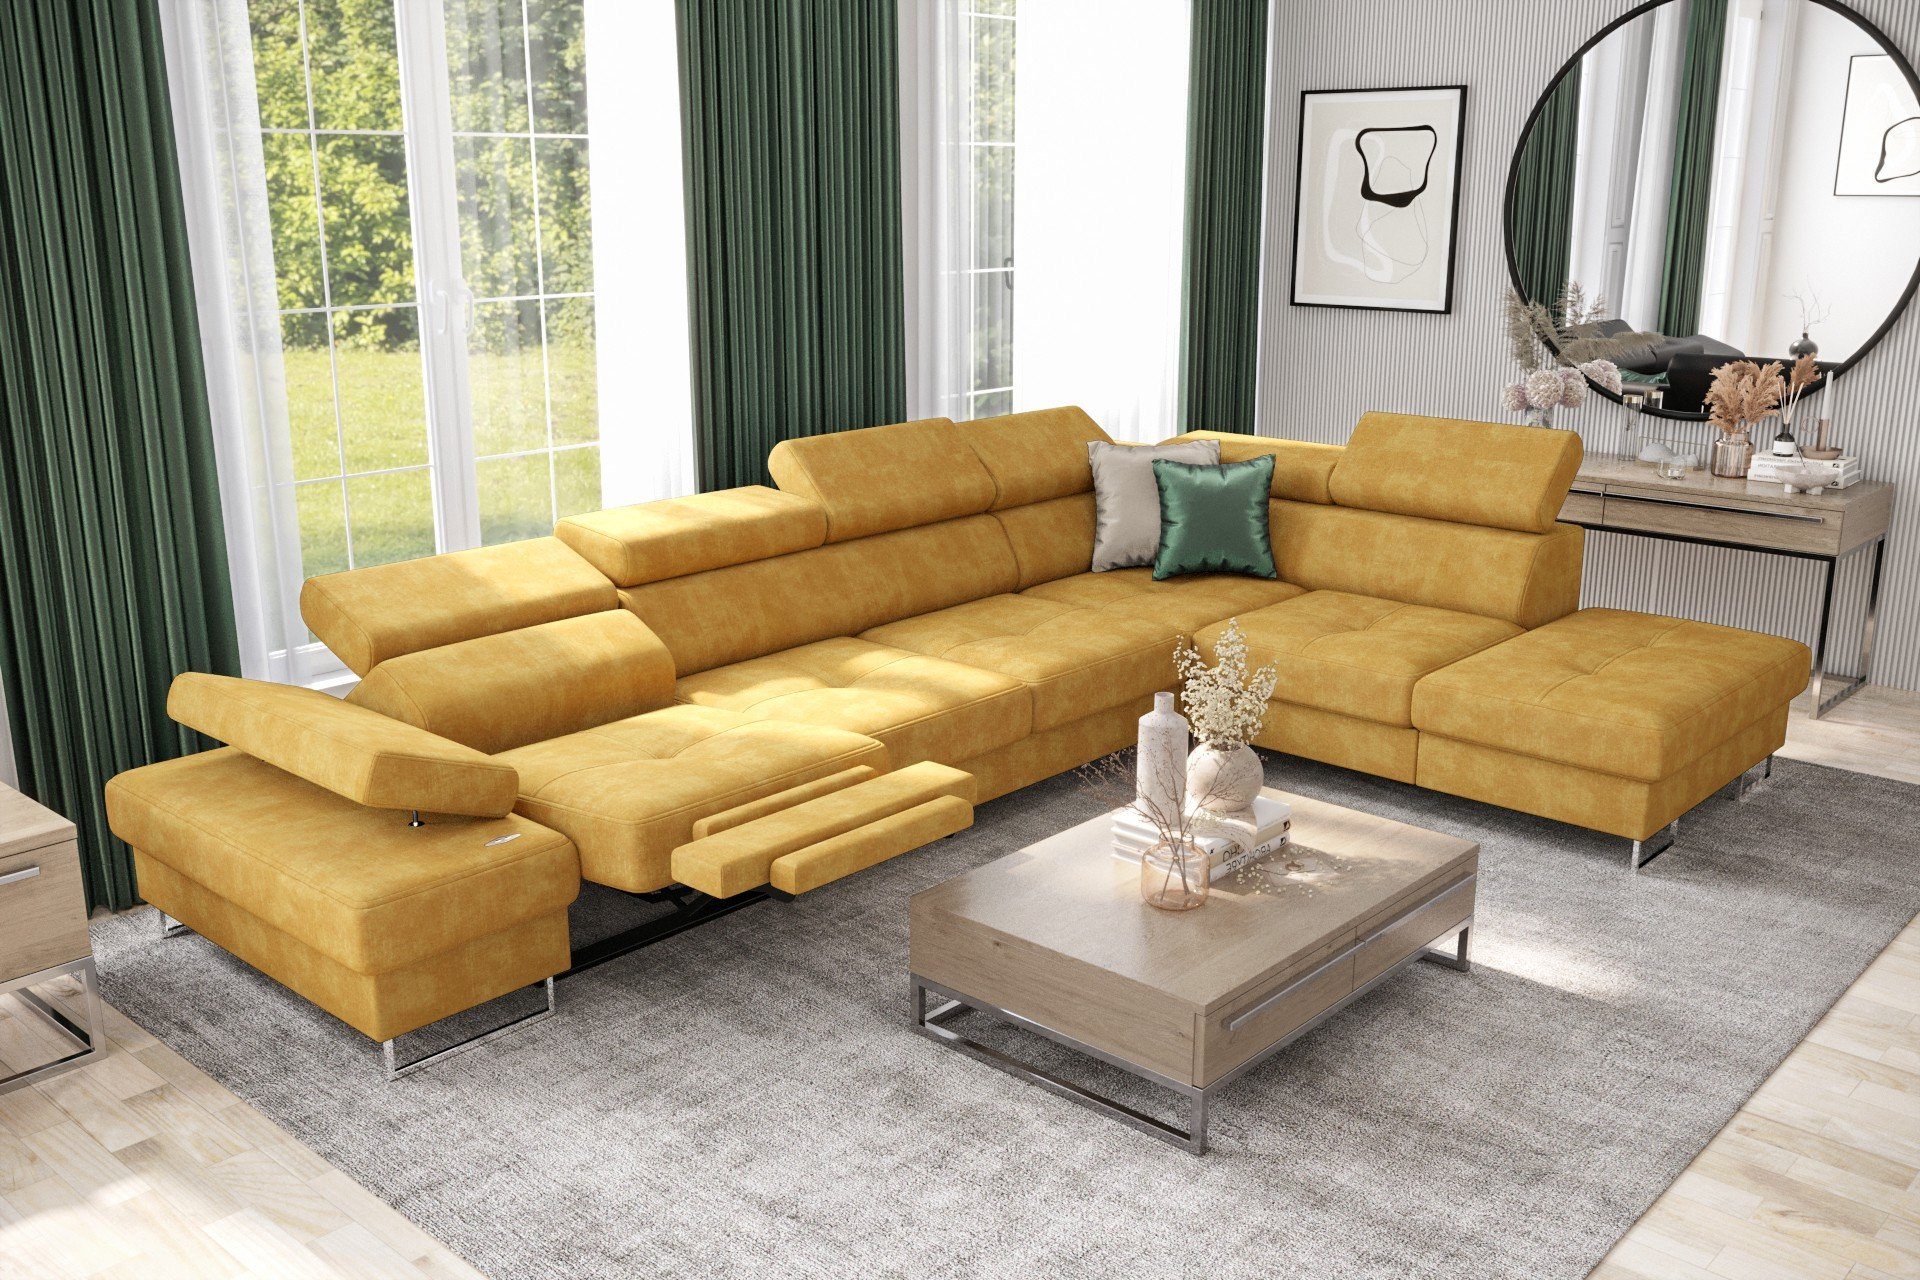 Möbel für Dich Ecksofa Galaxy Relax, mit Relaxfunktion, mit Bettkasten, mit Schlaffunktion, mit Farbauswahl